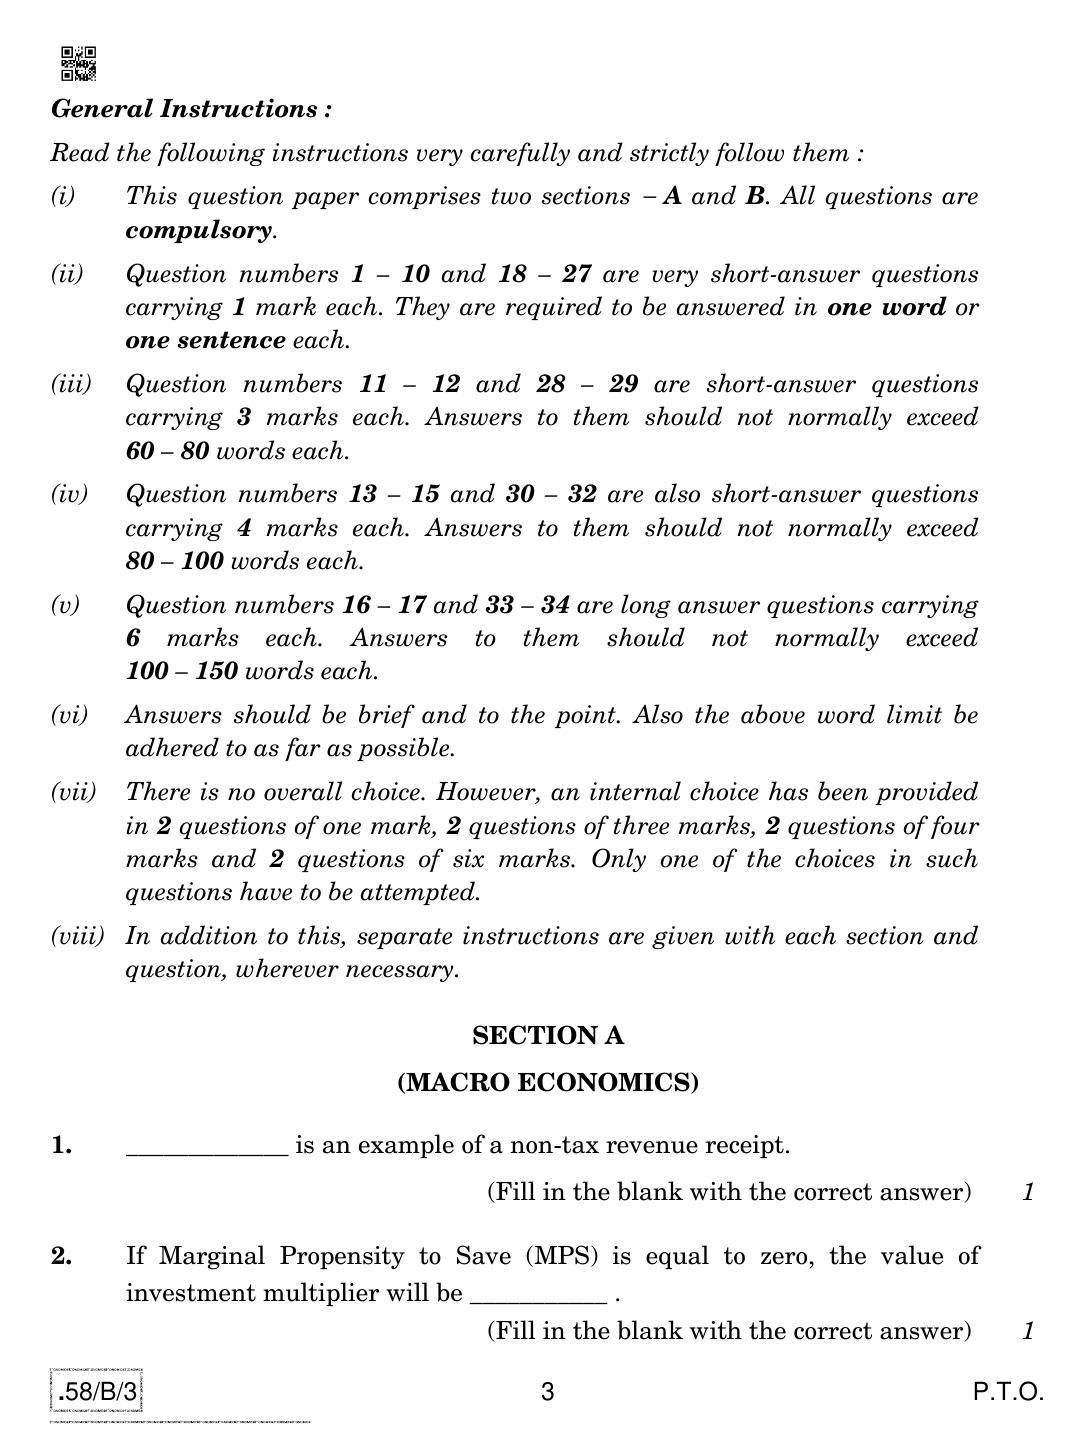 CBSE Class 12 58-C-3 - Economics 2020 Compartment Question Paper - Page 3